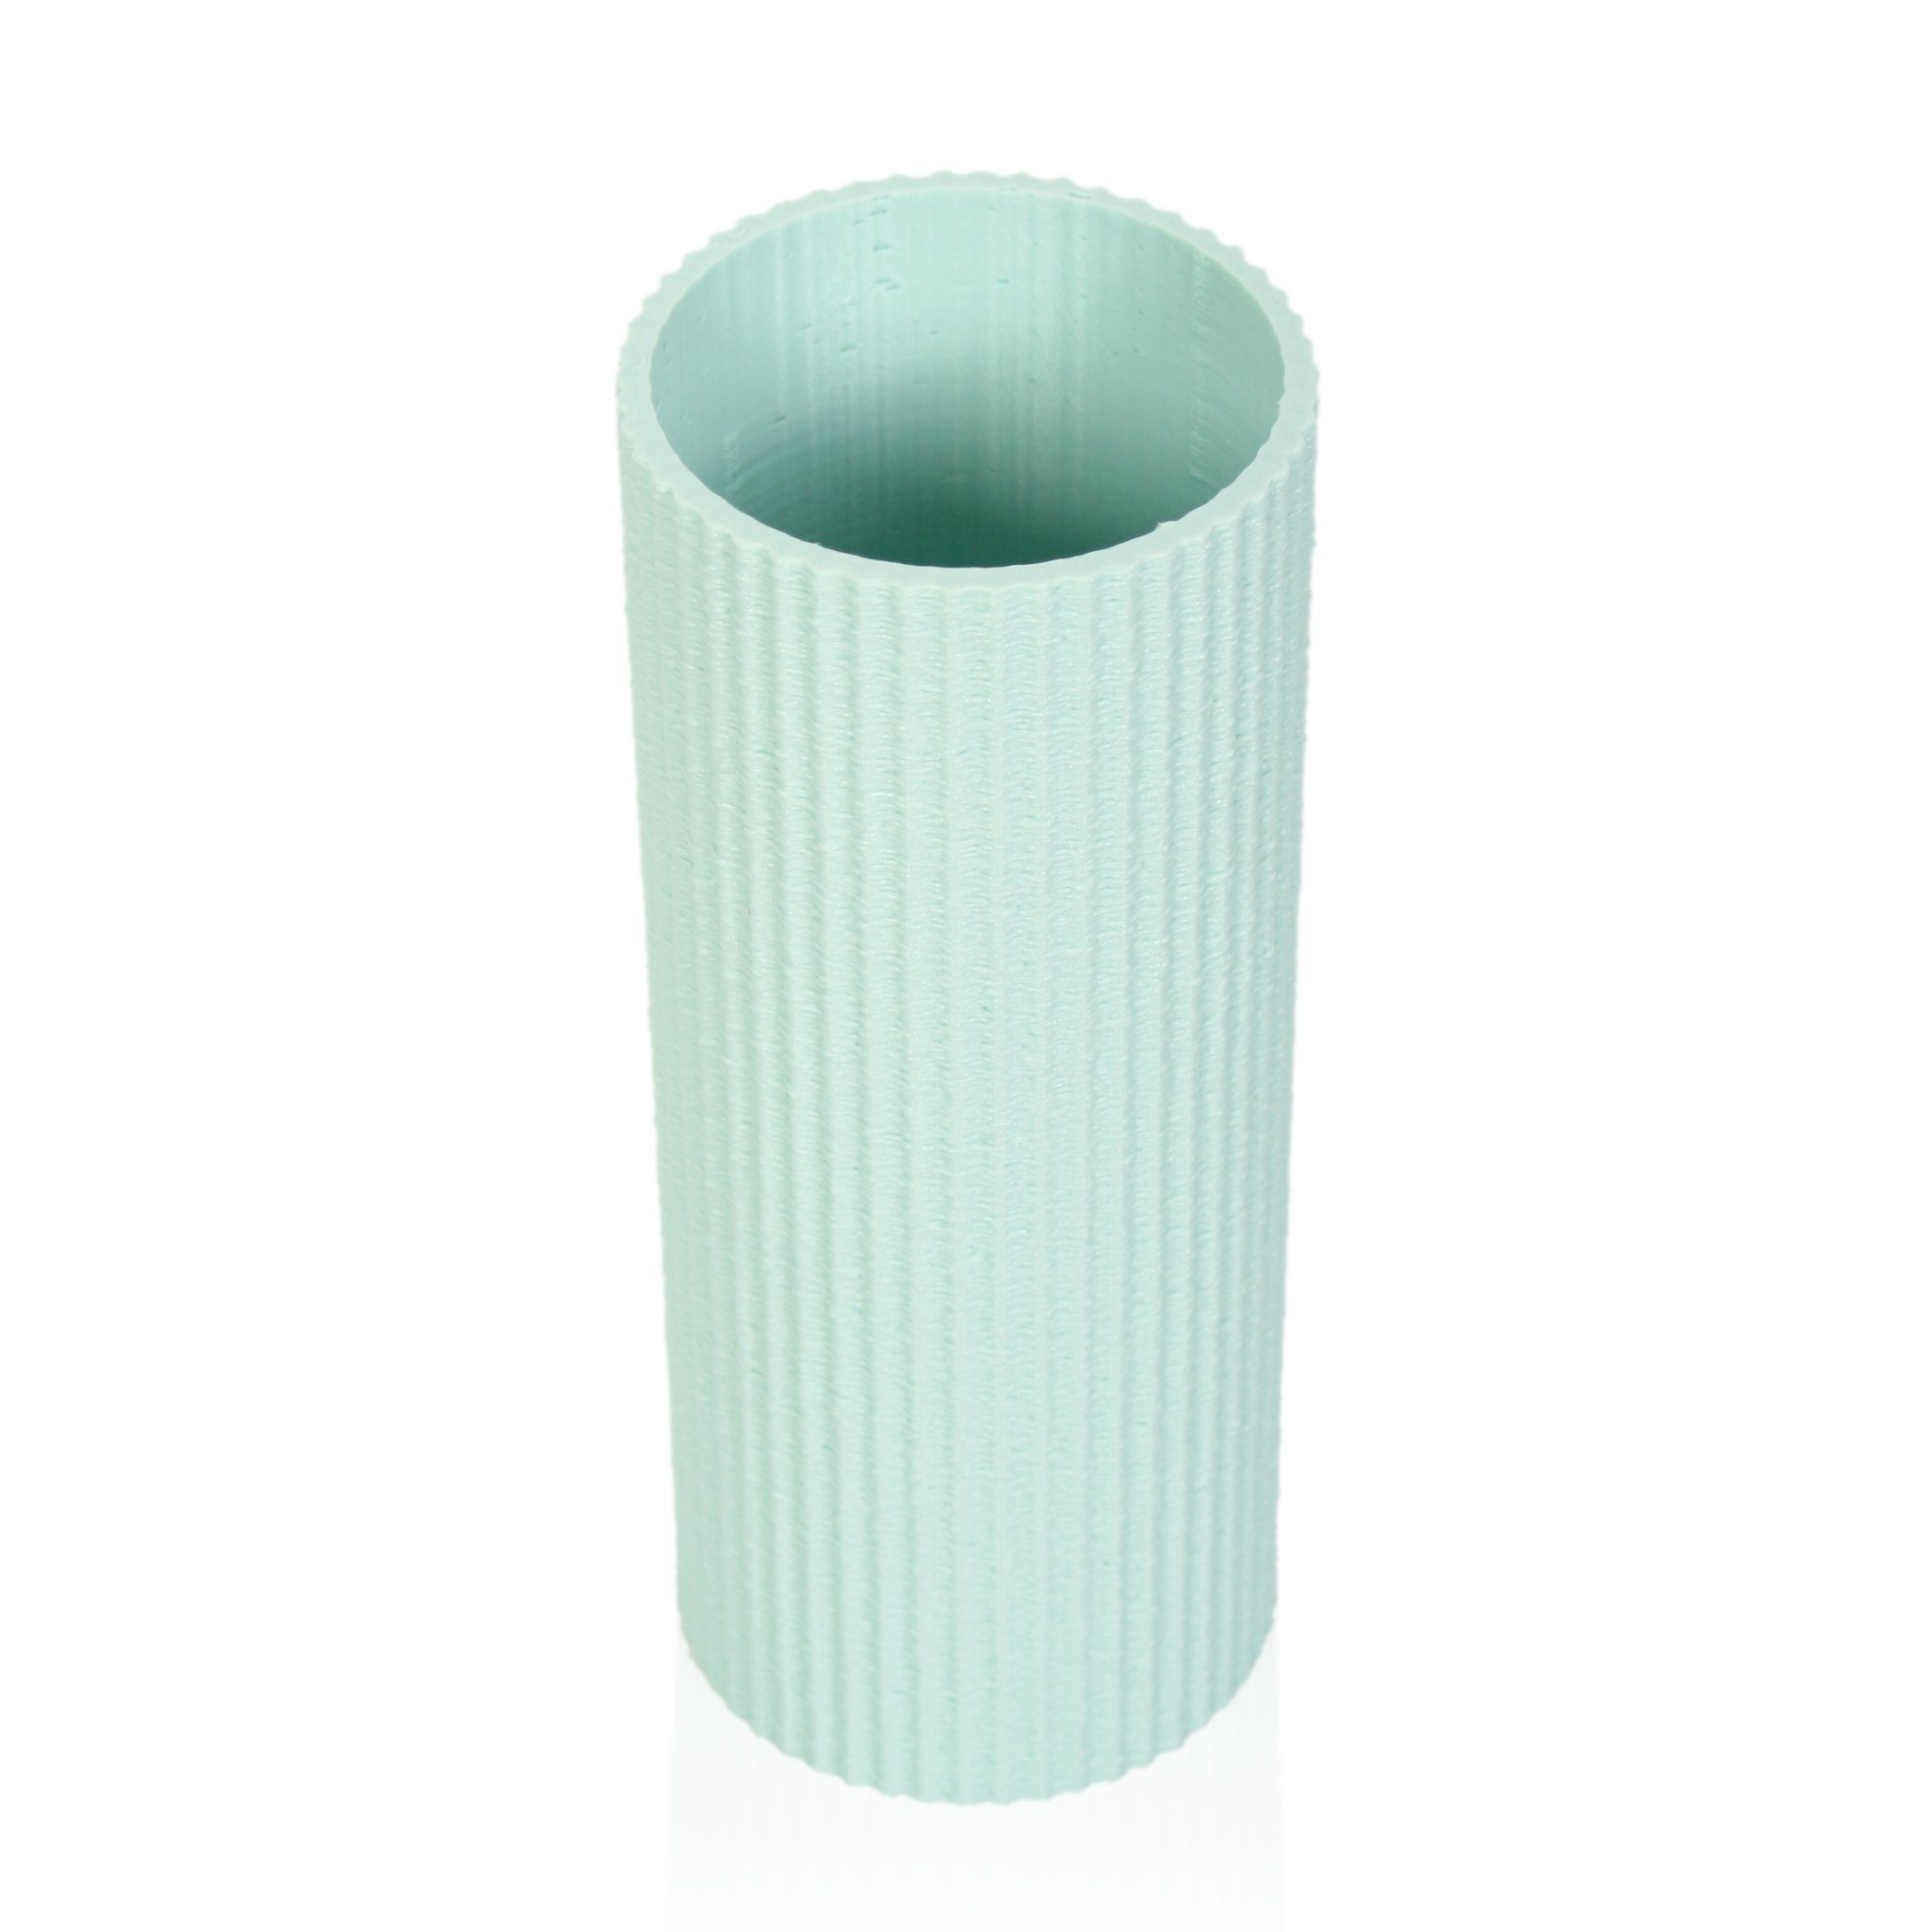 – nachwachsenden bruchsicher wasserdicht Vase Green aus Designer Dekovase Bio-Kunststoff, Dekorative Kreative Water aus Rohstoffen; Blumenvase & Feder